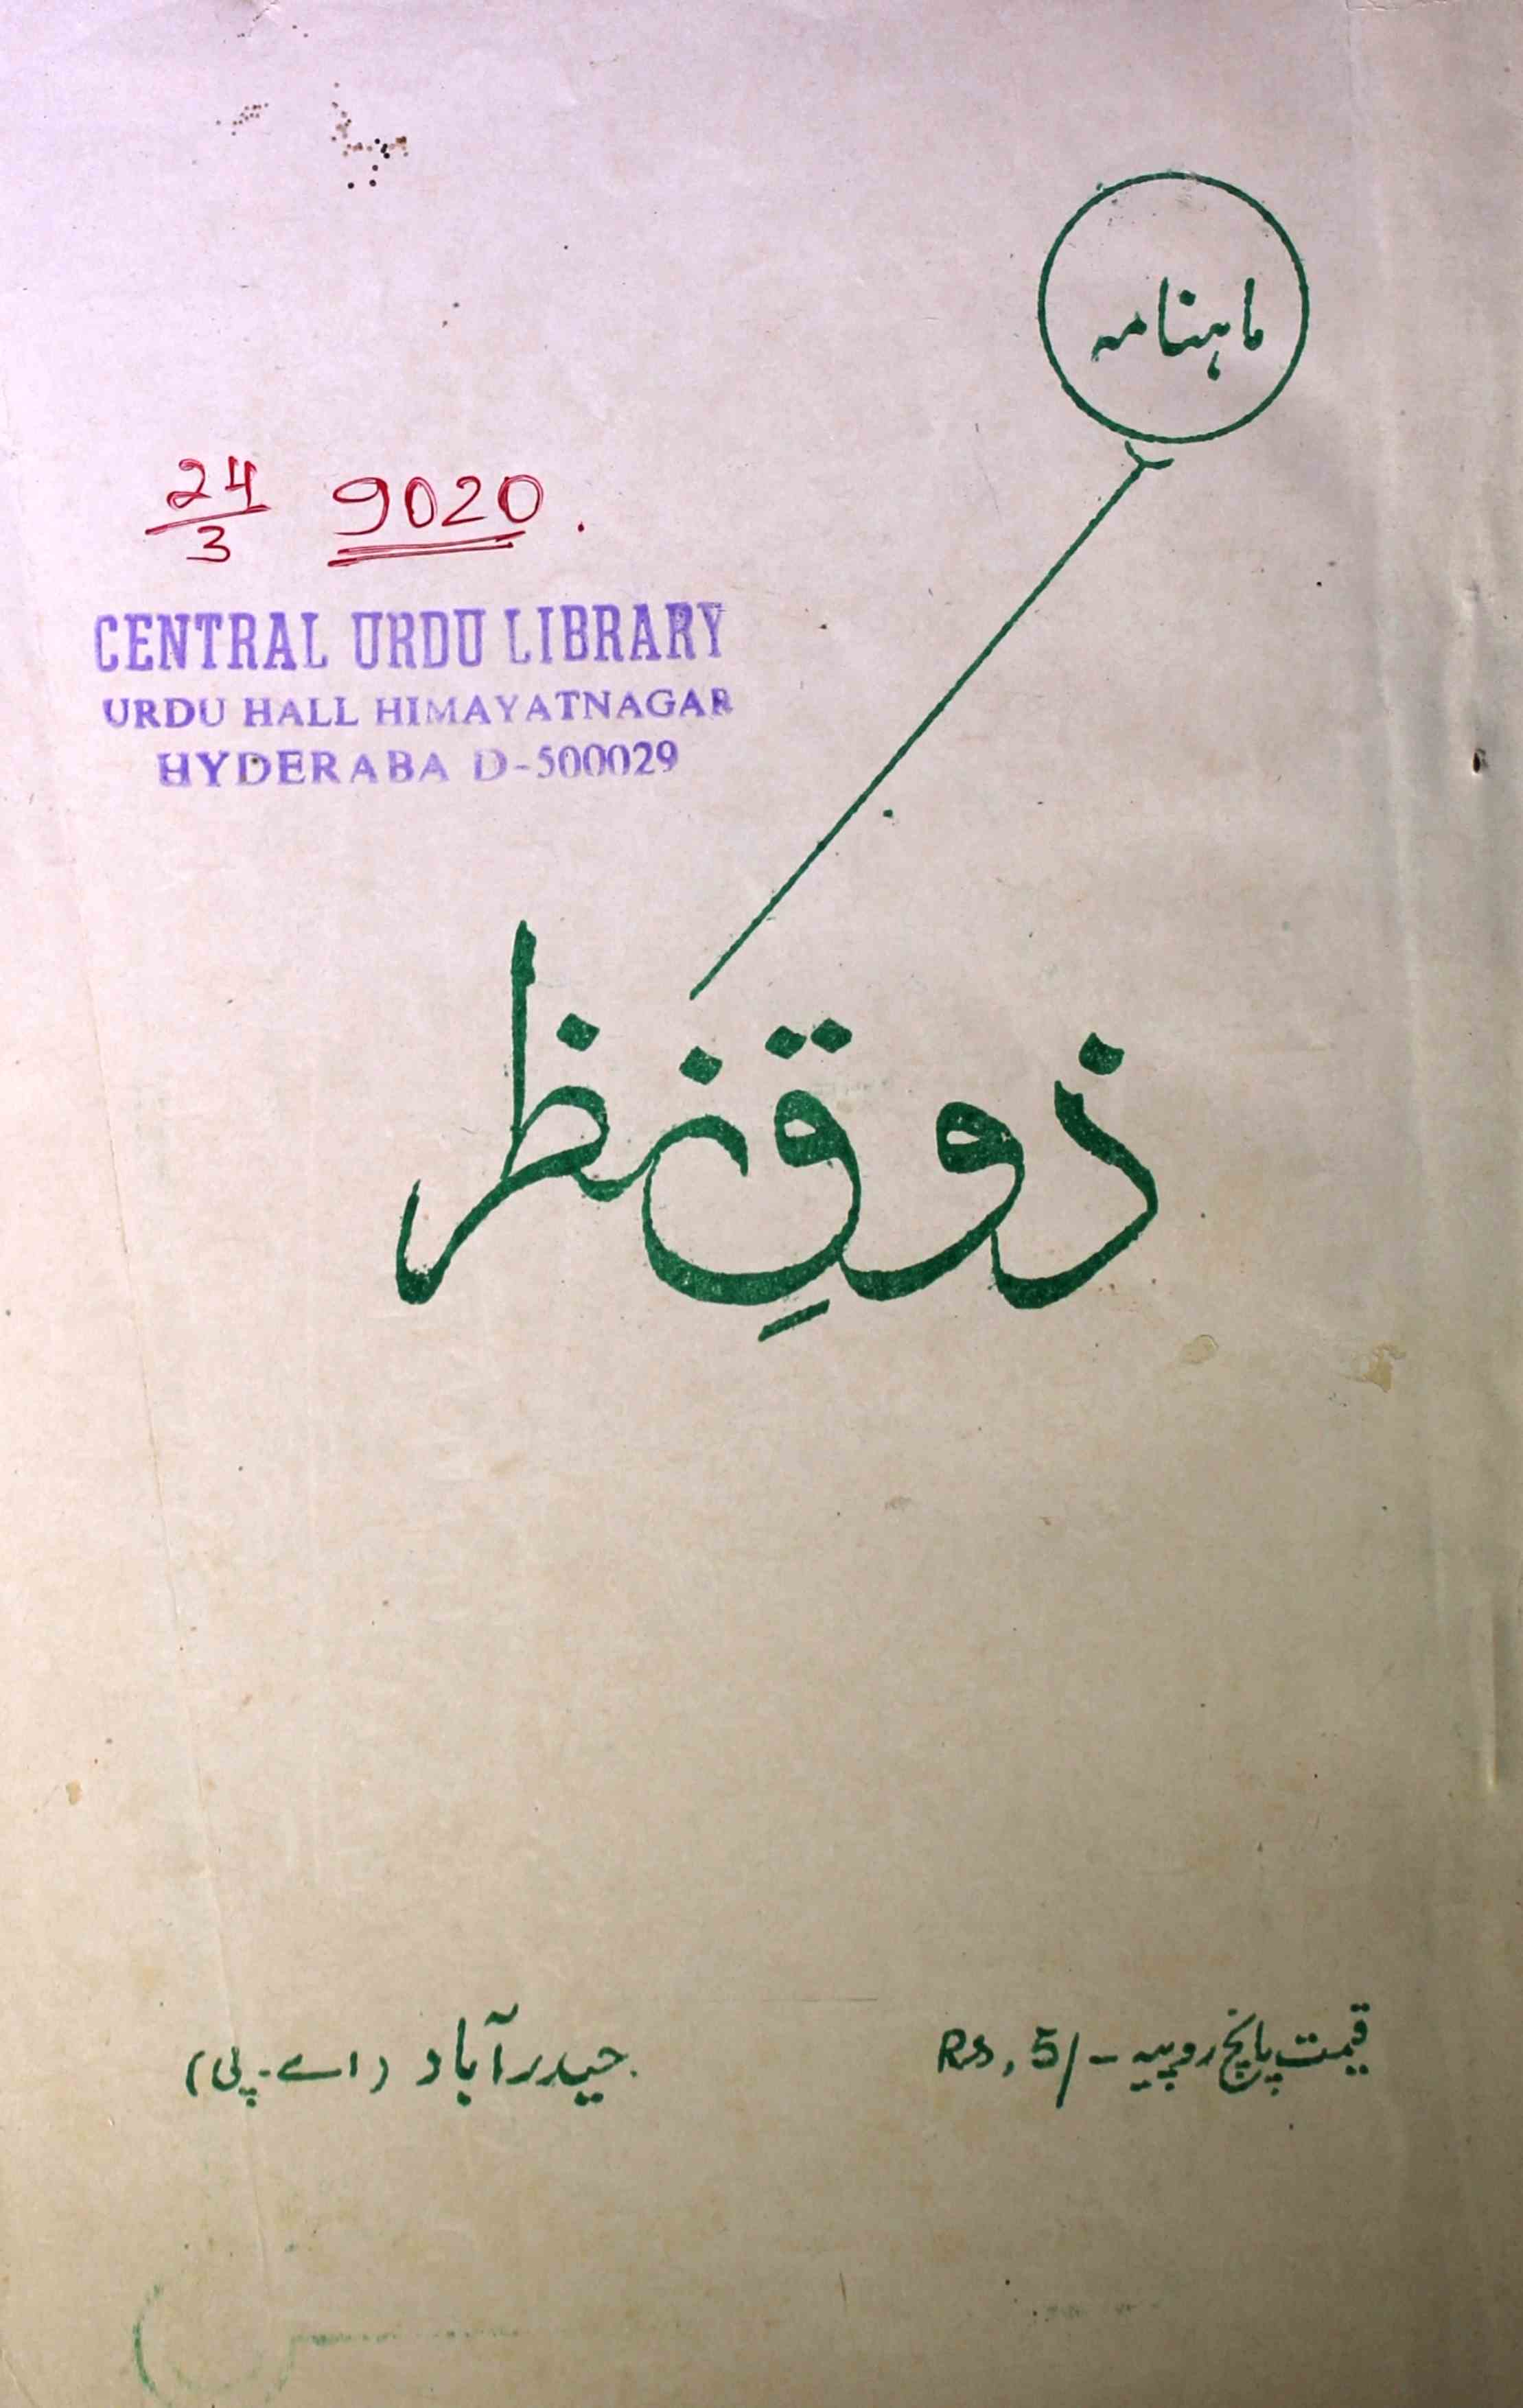 Zauq-e-Nazar Jild-1 Shumara.4 May - Hyd-Shumara Number-004